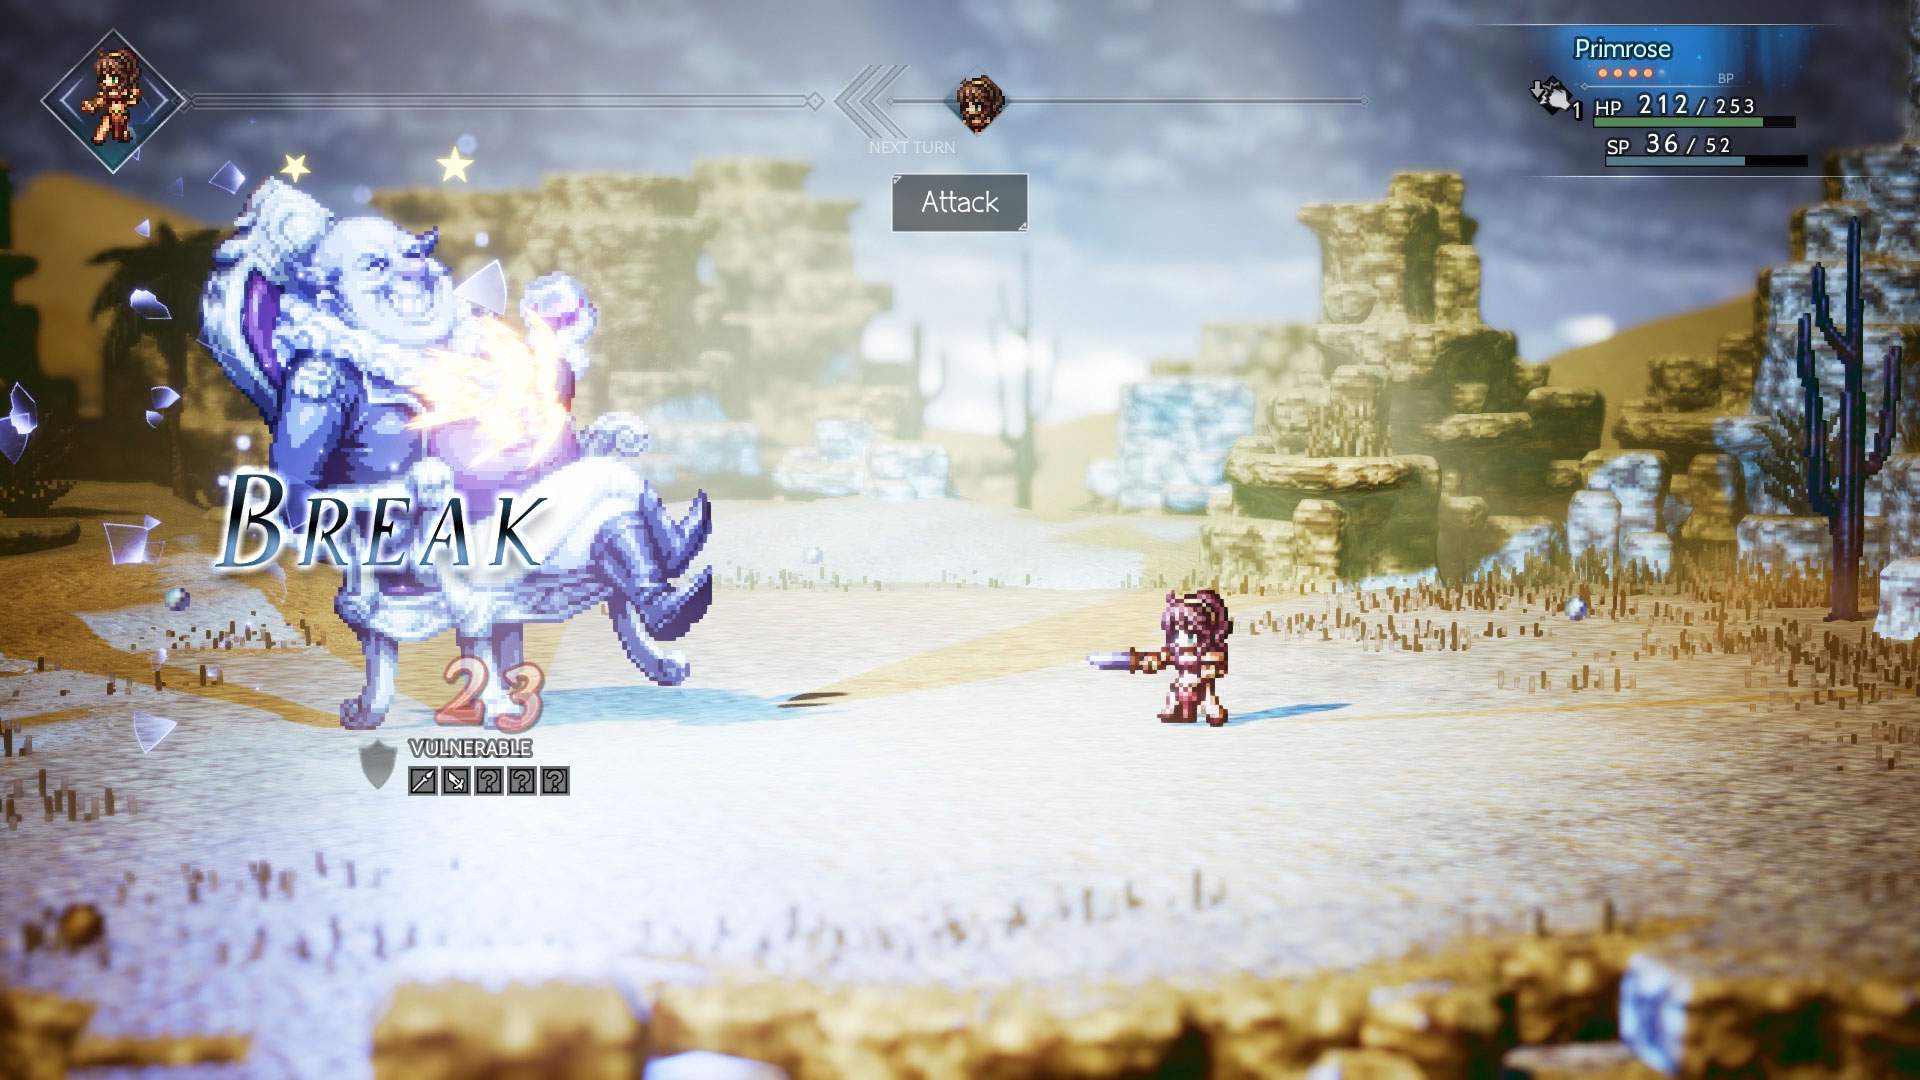 Captura de tela do combate: Primrose atacando um grande inimigo no deserto.